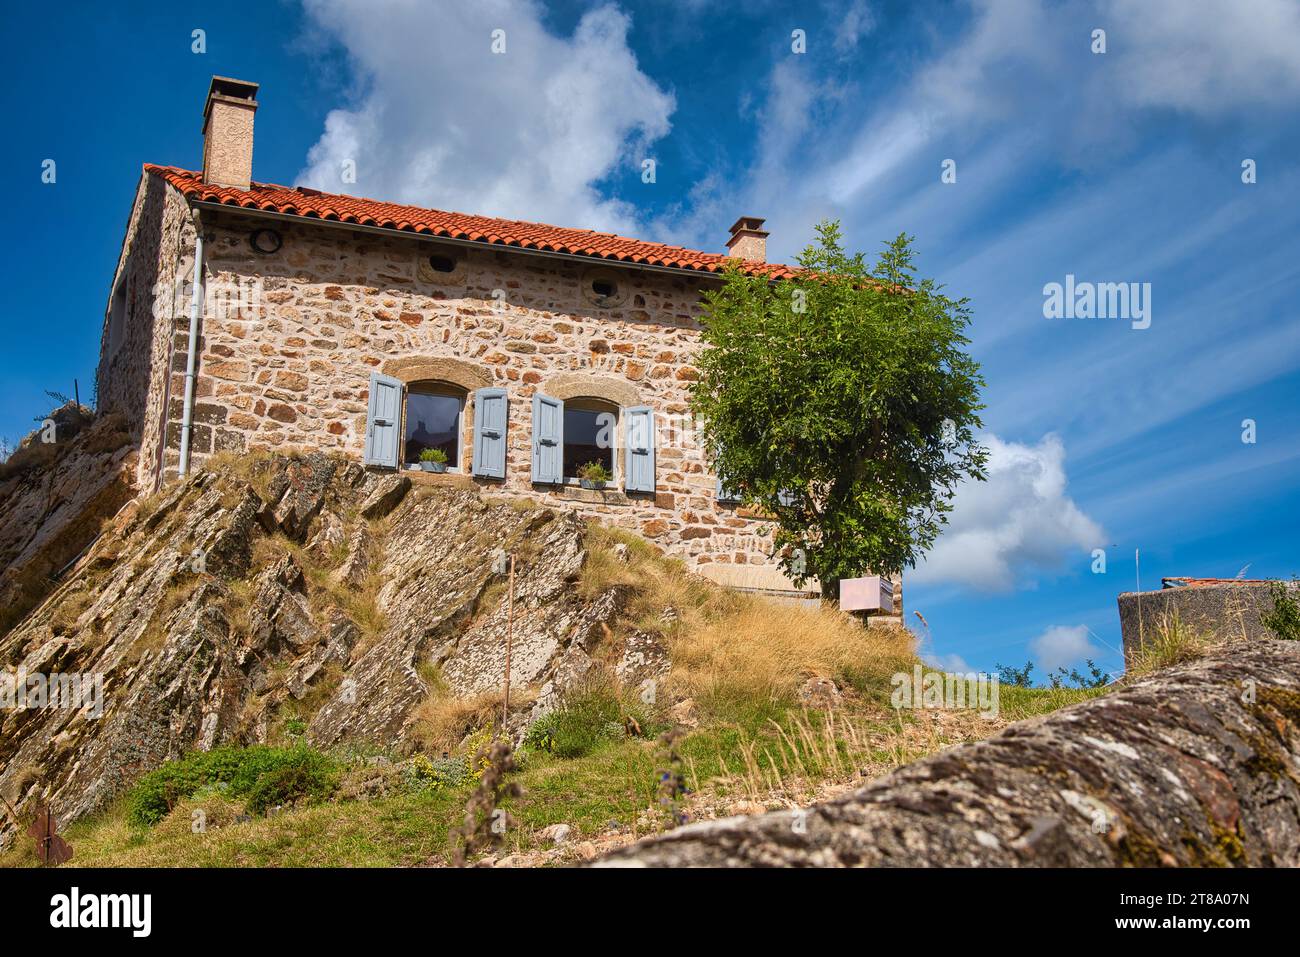 une maison traditionnelle en pierre à Pradelles en Auvergne /    a traditional stone house in Pradelles, Auvergne Stock Photo